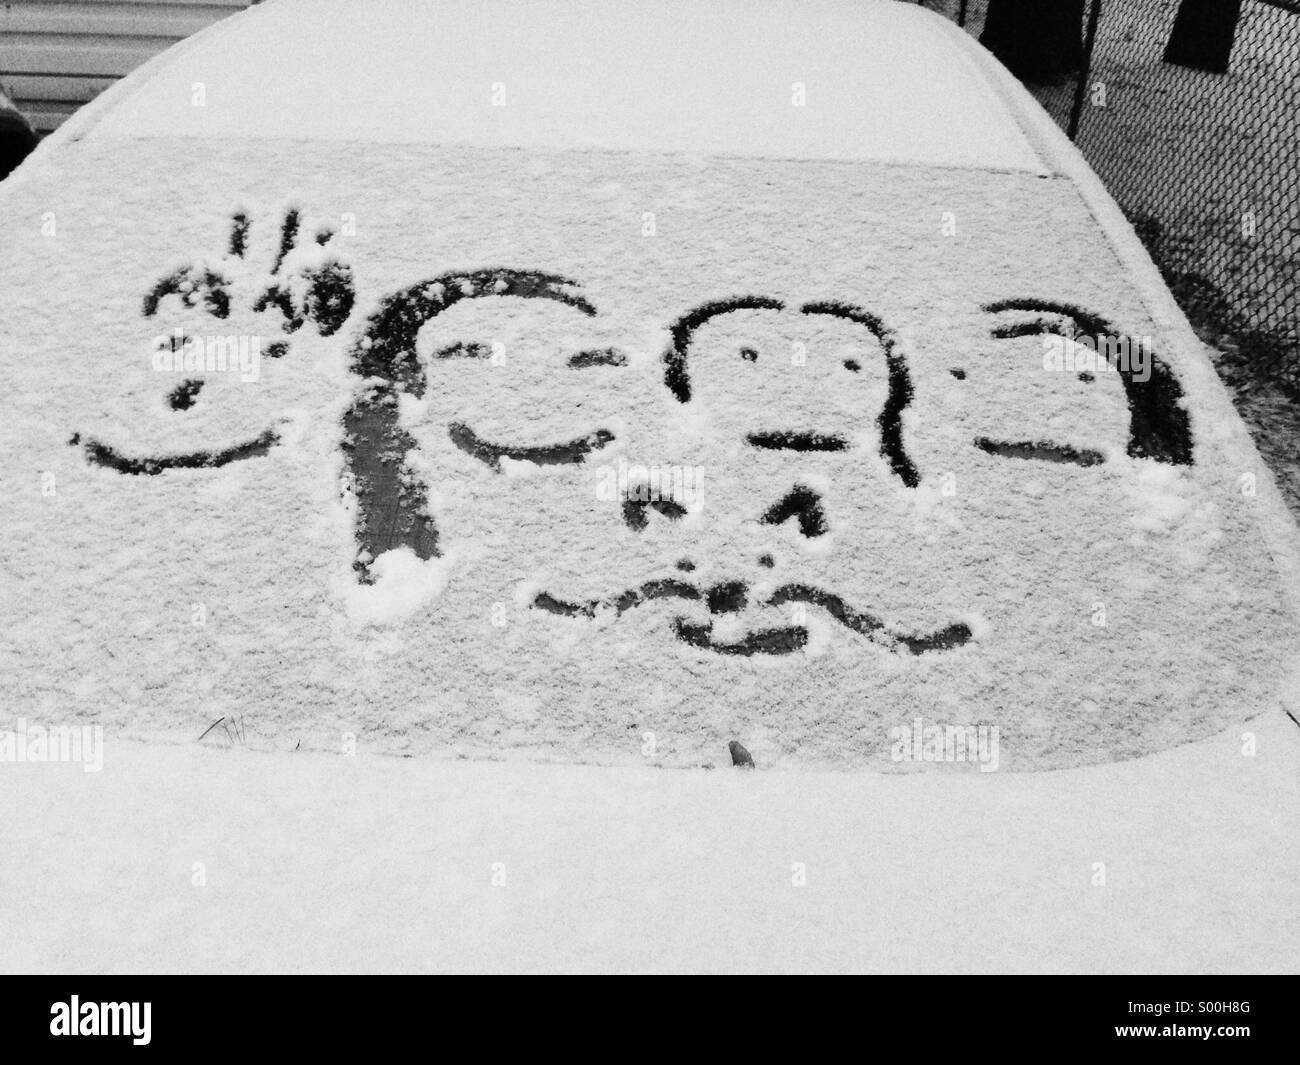 Handgezeichnete Familie Figuren im frisch gefallenen Schnee auf dem Auto Heckscheibe Stockfoto